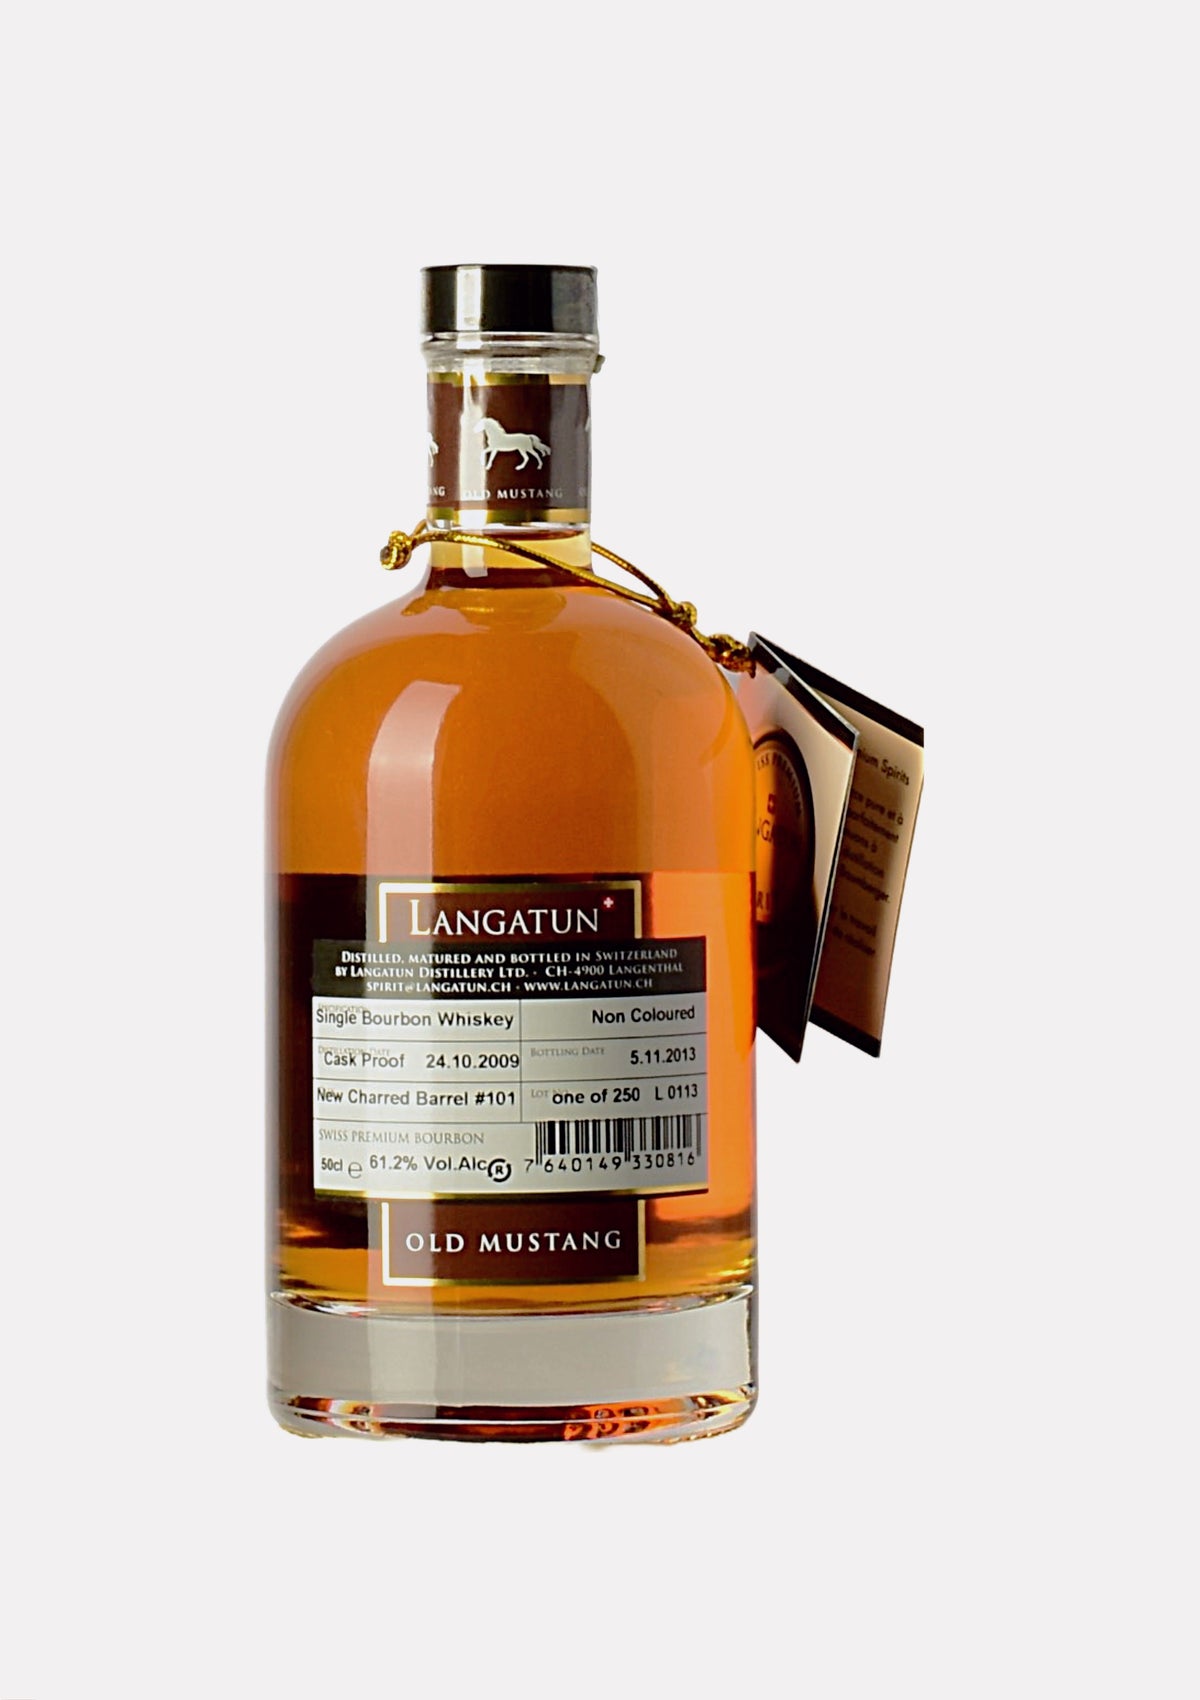 Langatun Old Mustang Bourbon Whiskey 2009- 2013